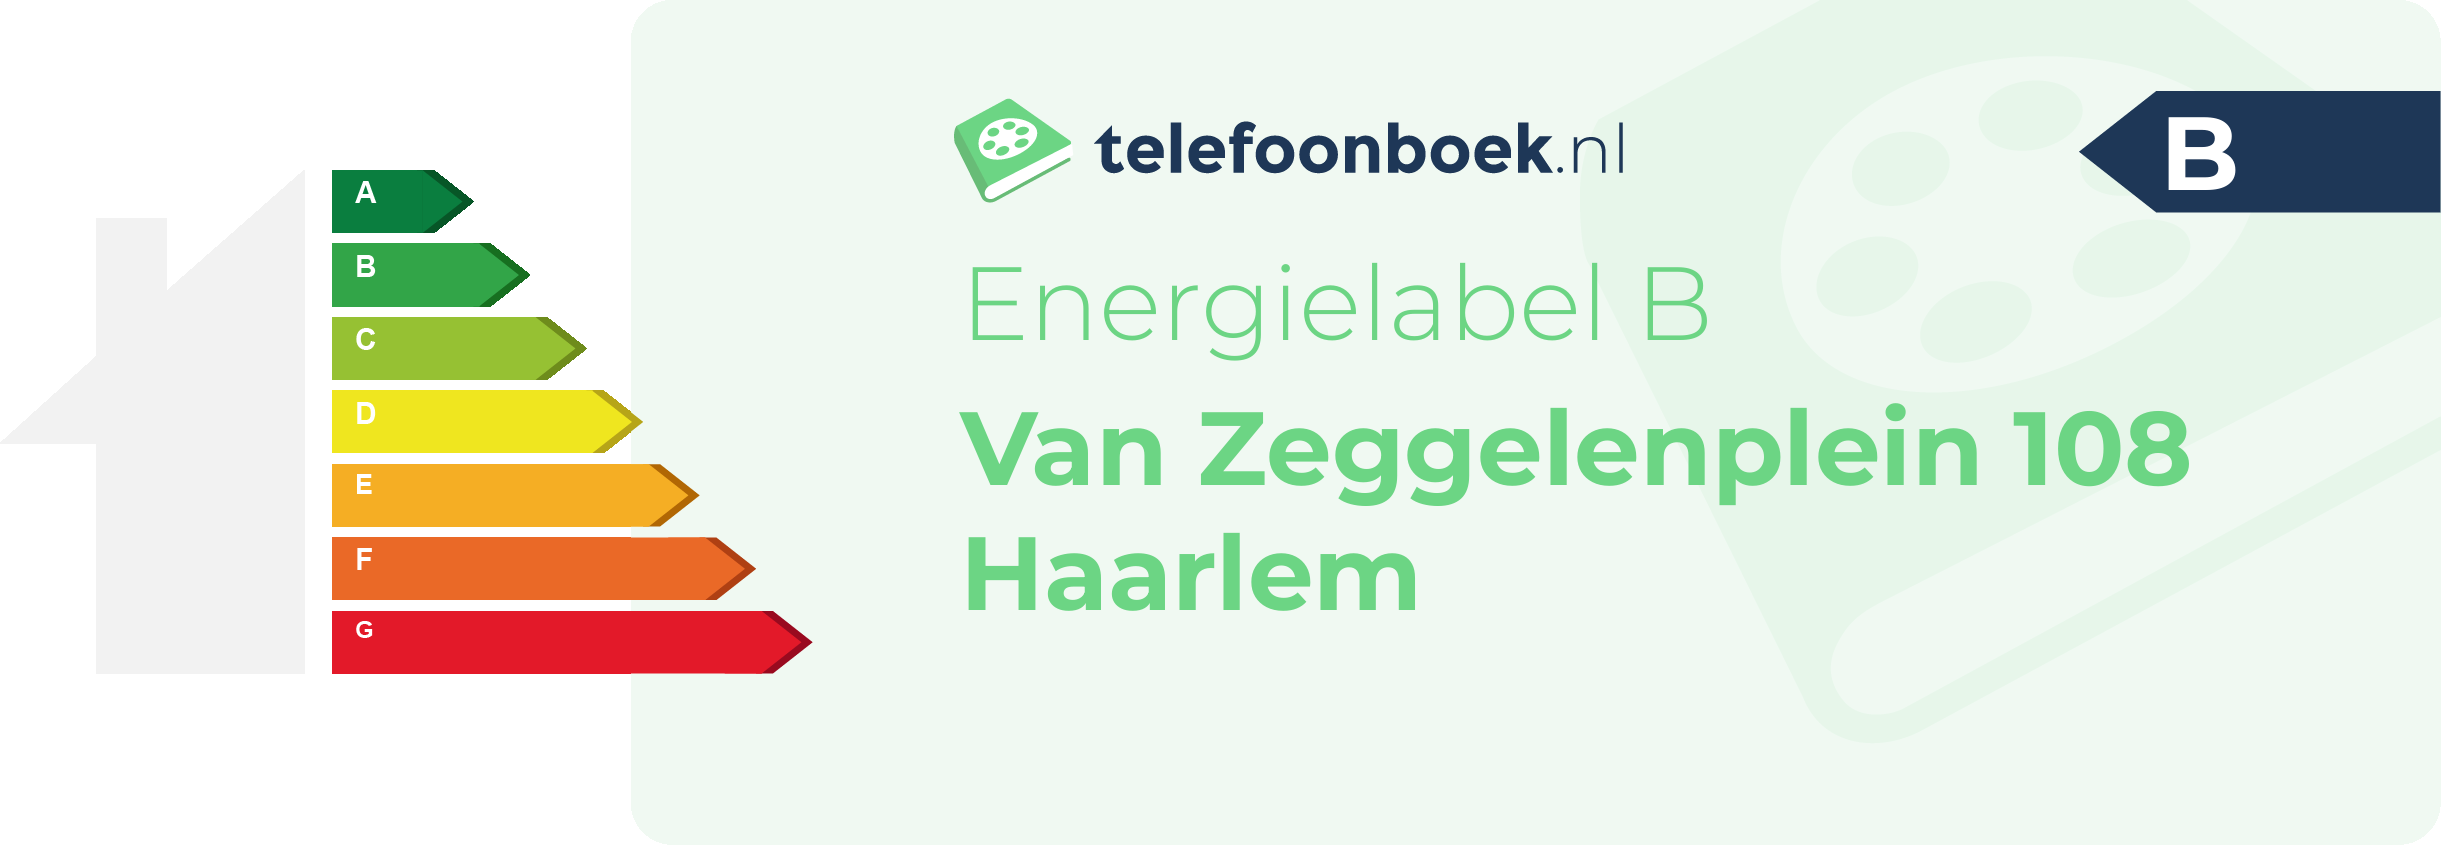 Energielabel Van Zeggelenplein 108 Haarlem